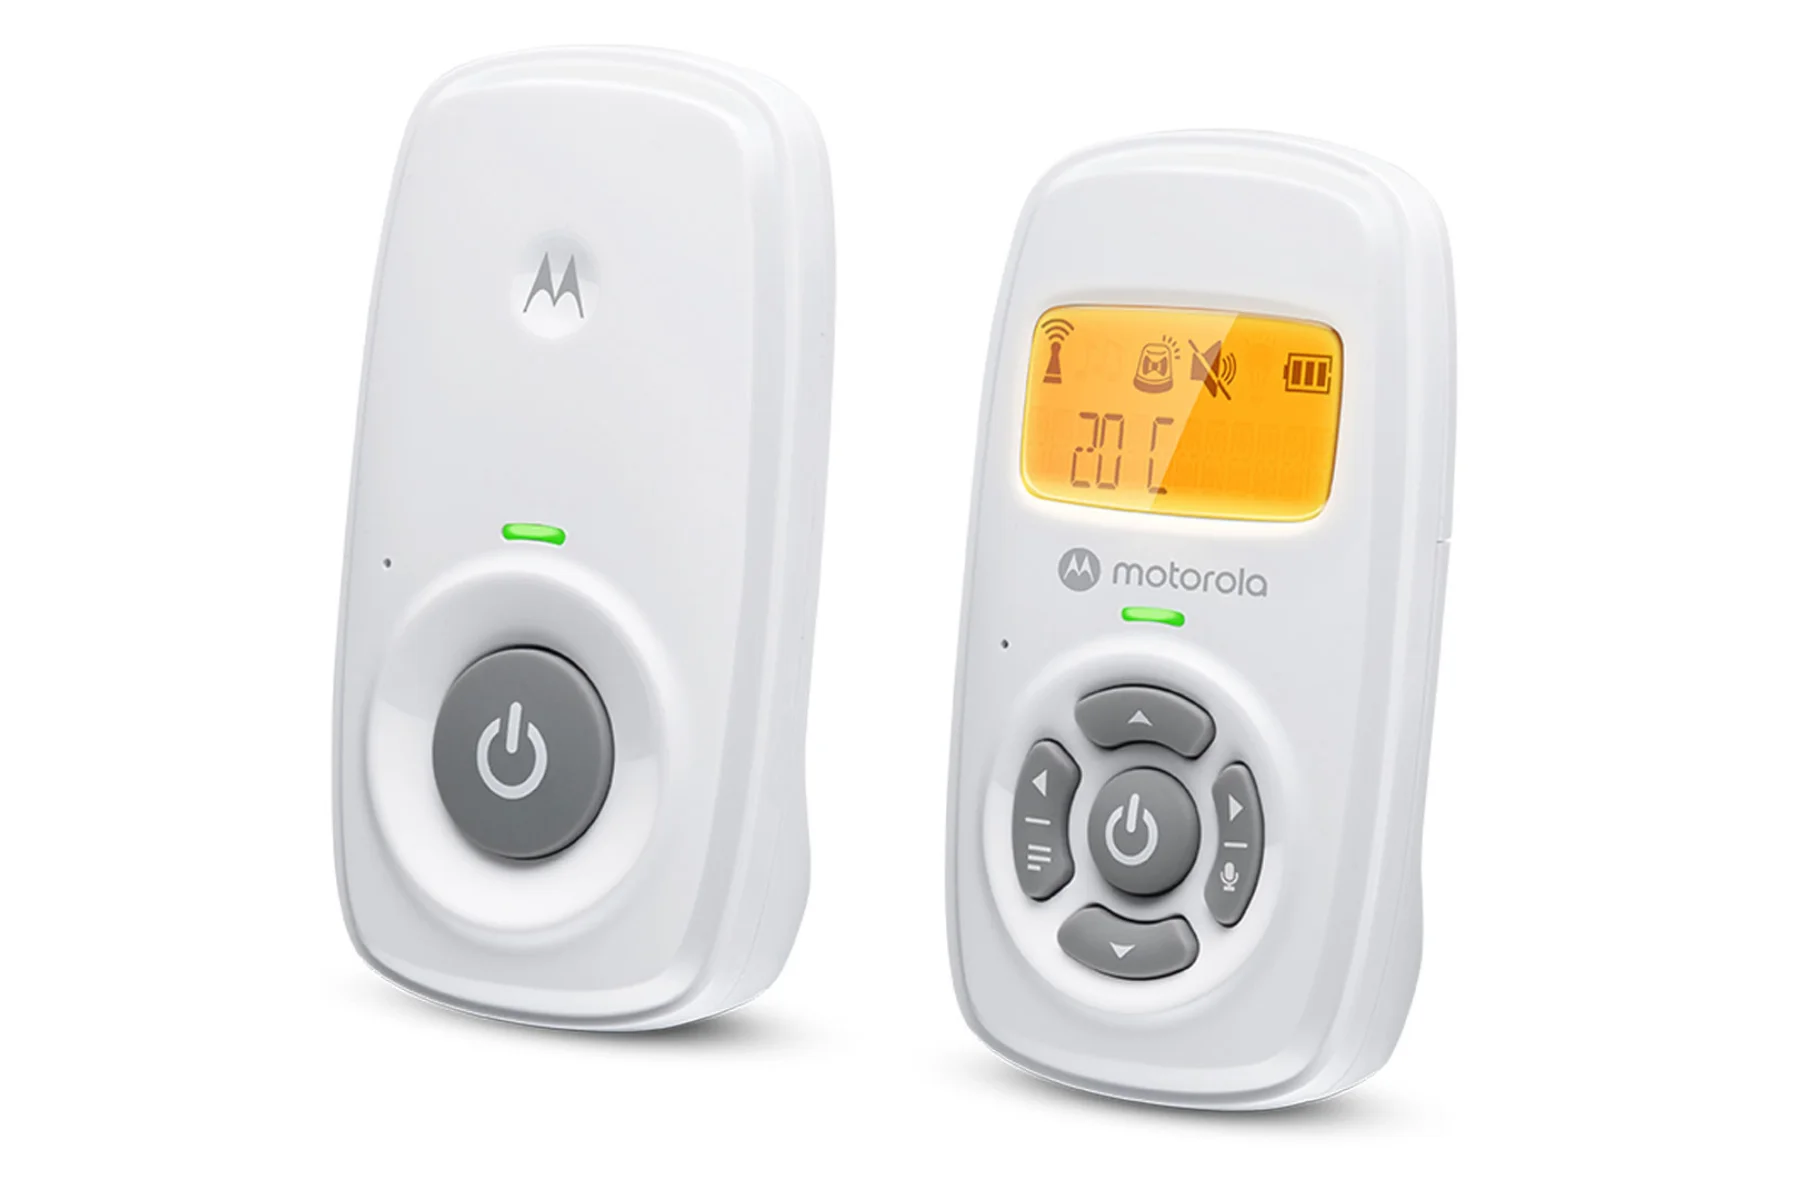 Audio detská pestúnka Motorola AM 24 obojsmerny rozhovor